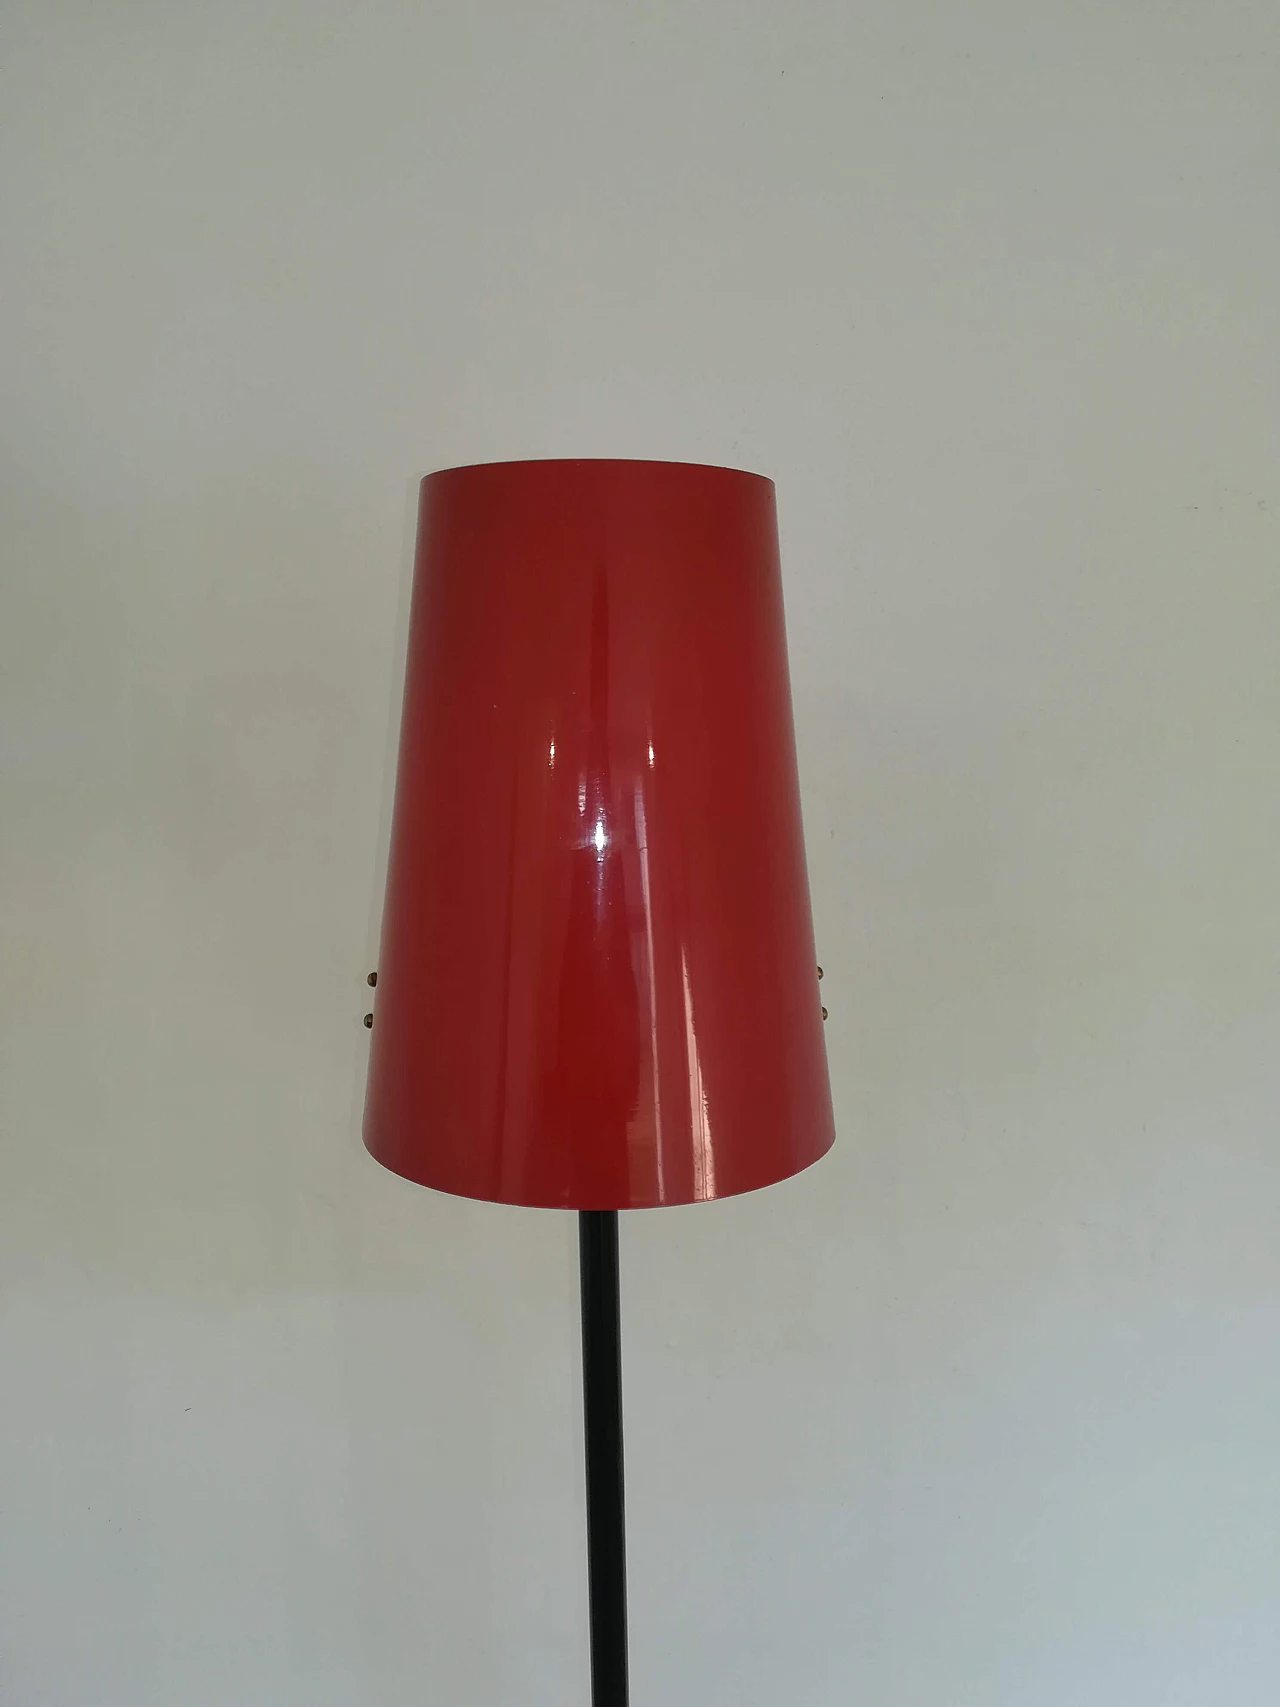 Stilux Milano floor lamp, 1950s 1104511